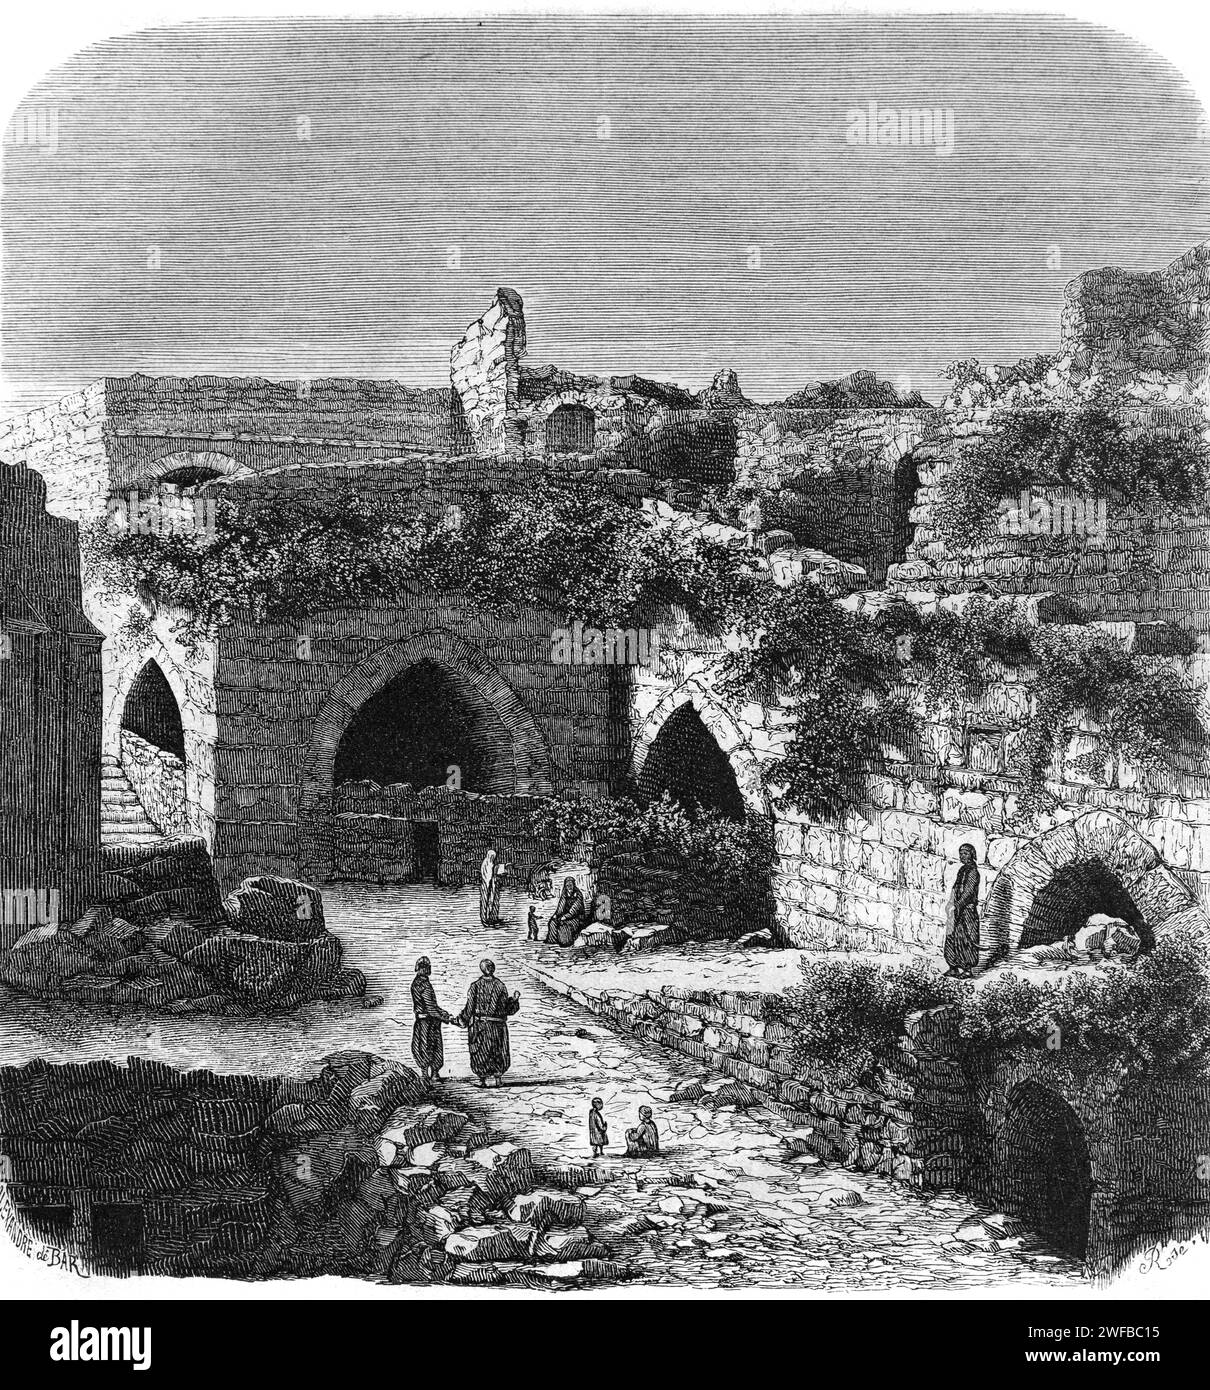 Forteresse de Krak des Chevaliers ou Château des Croisés (c11th-c12th) Syrie. Gravure ou illustration vintage ou historique. Banque D'Images